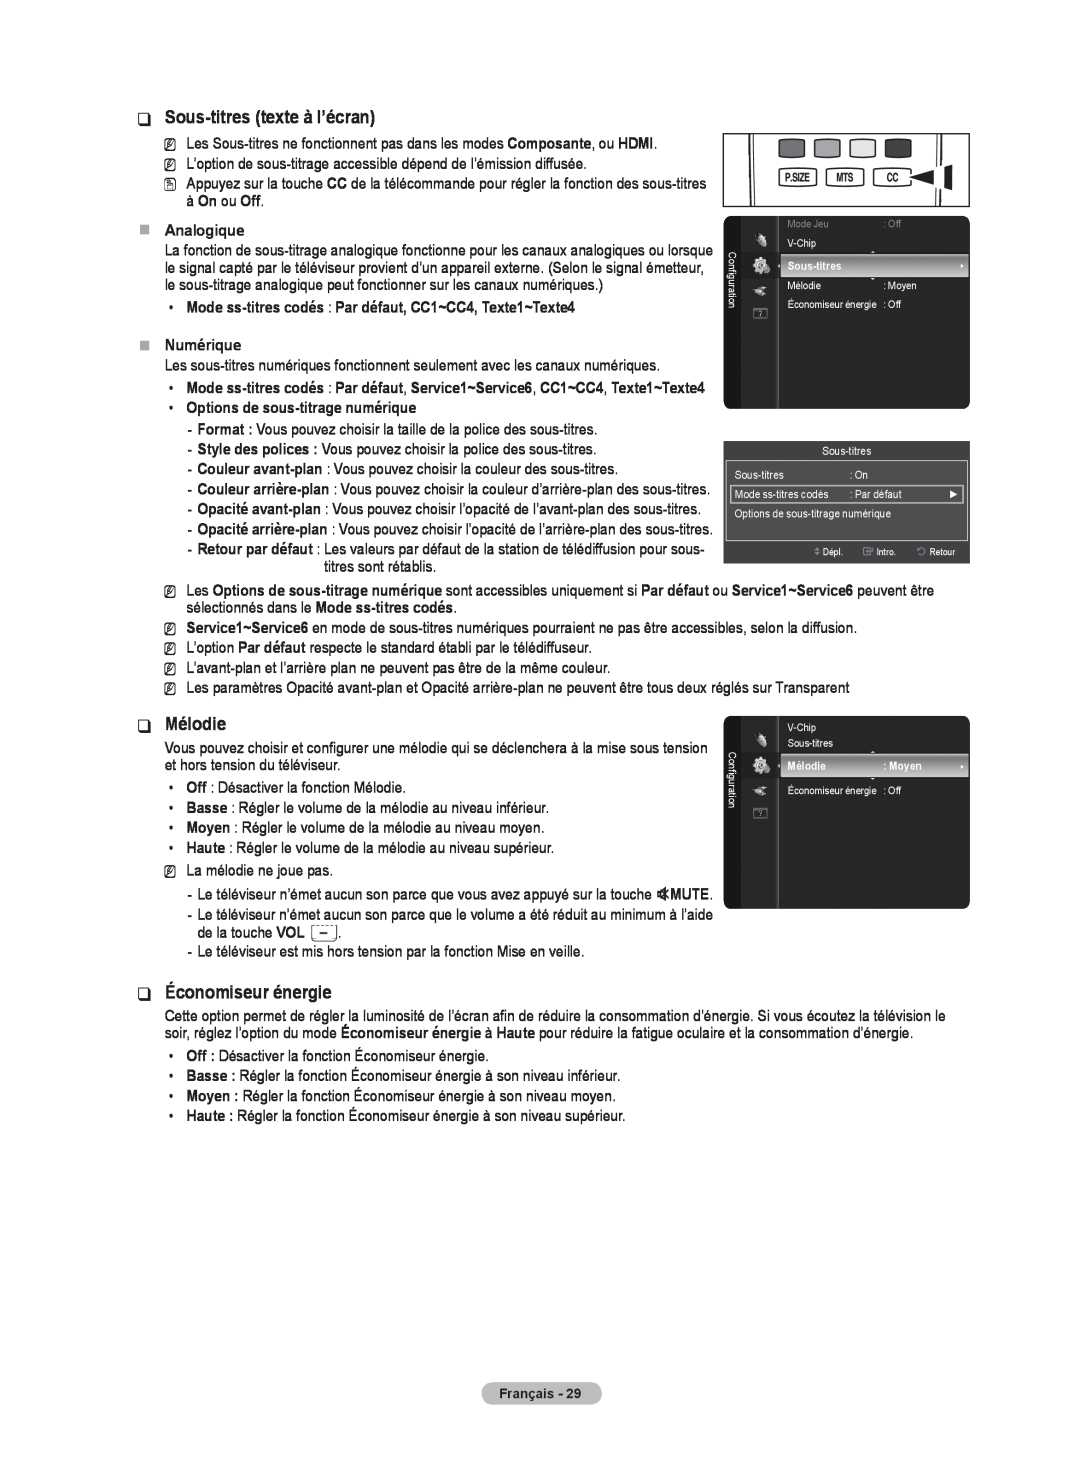 Samsung BN68-02426A-00 user manual Sous-titres texte à l’écran, Mélodie, Économiseur énergie, Analogique, Numérique 